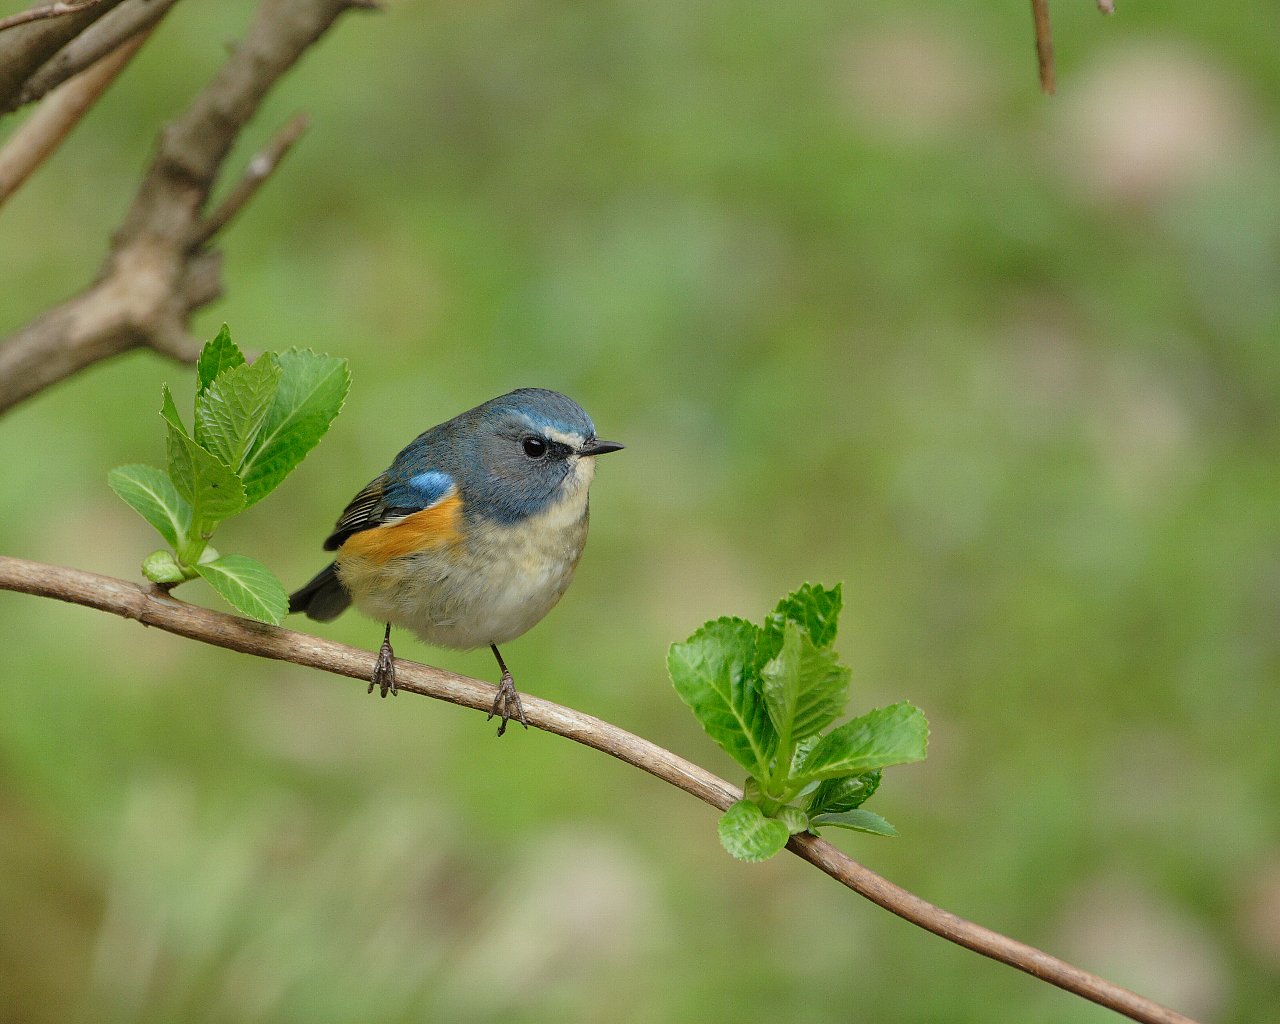 ルリビタキもまだ居ました 綺麗な幸せの青い鳥の壁紙 Life With Birds 3